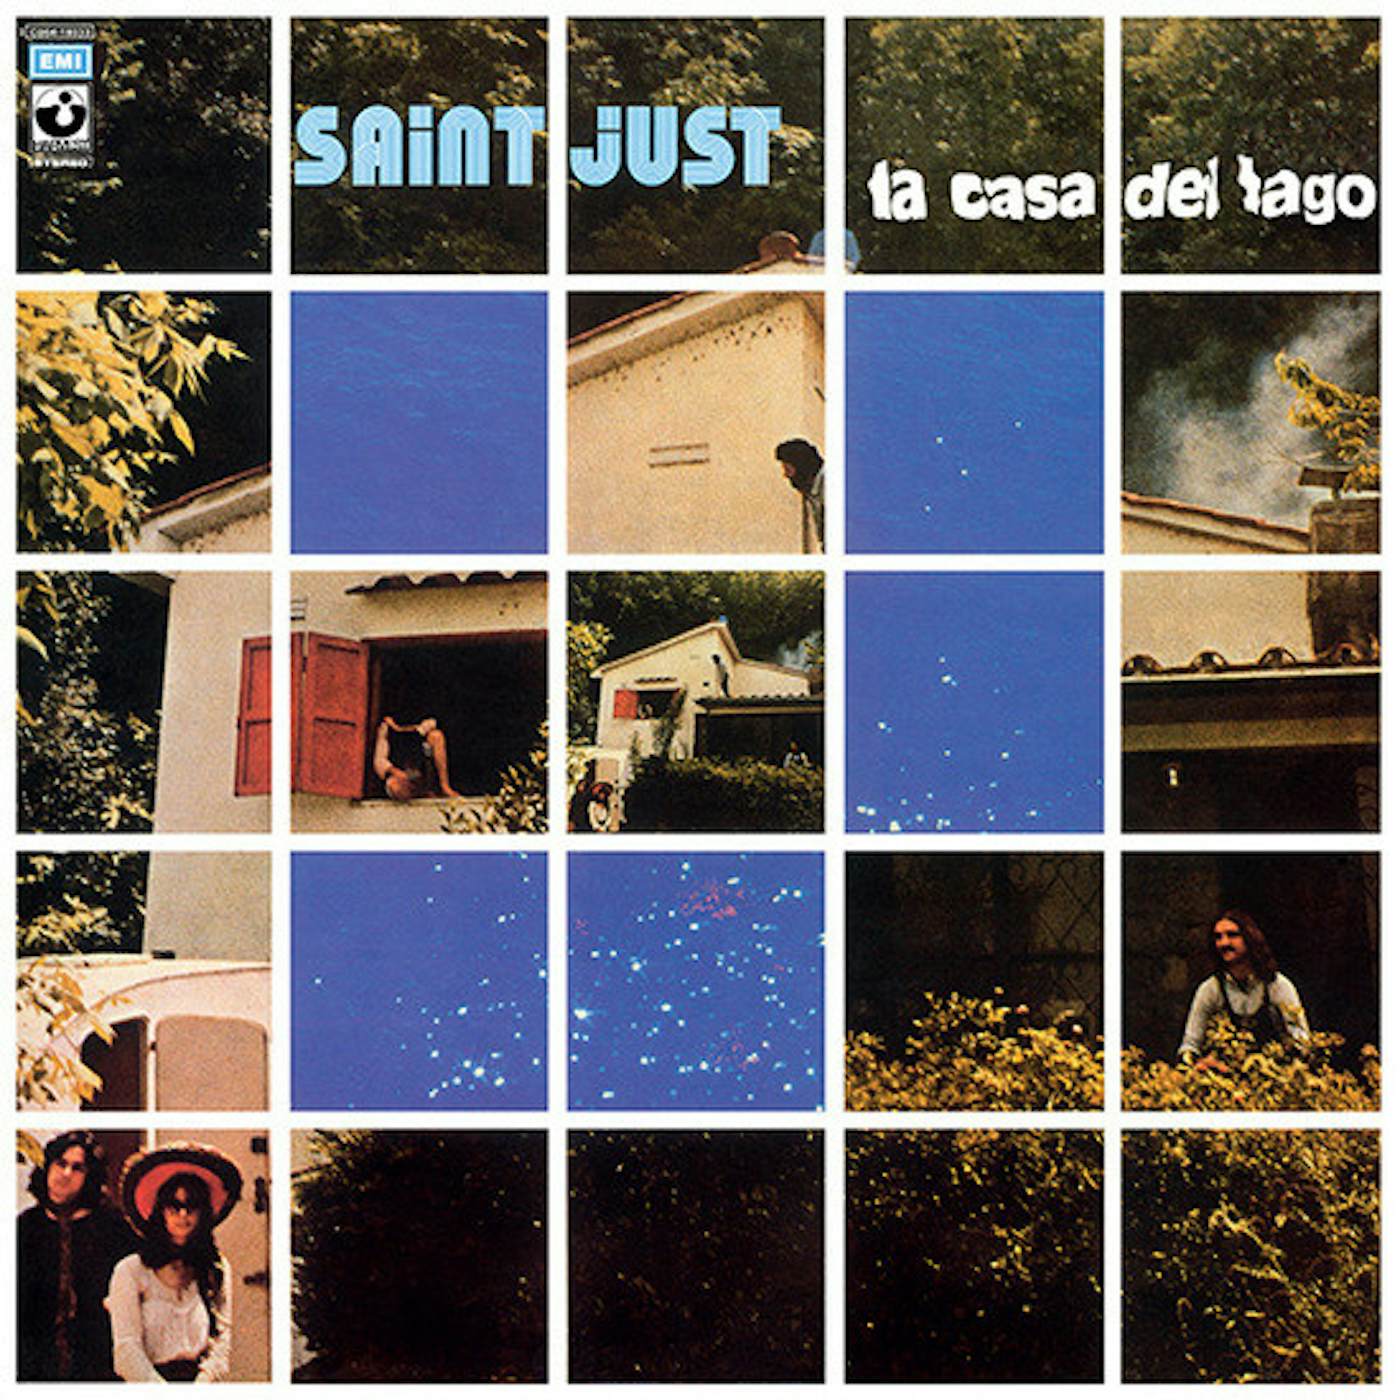 Saint Just LA CASAA DEL LAGO Vinyl Record